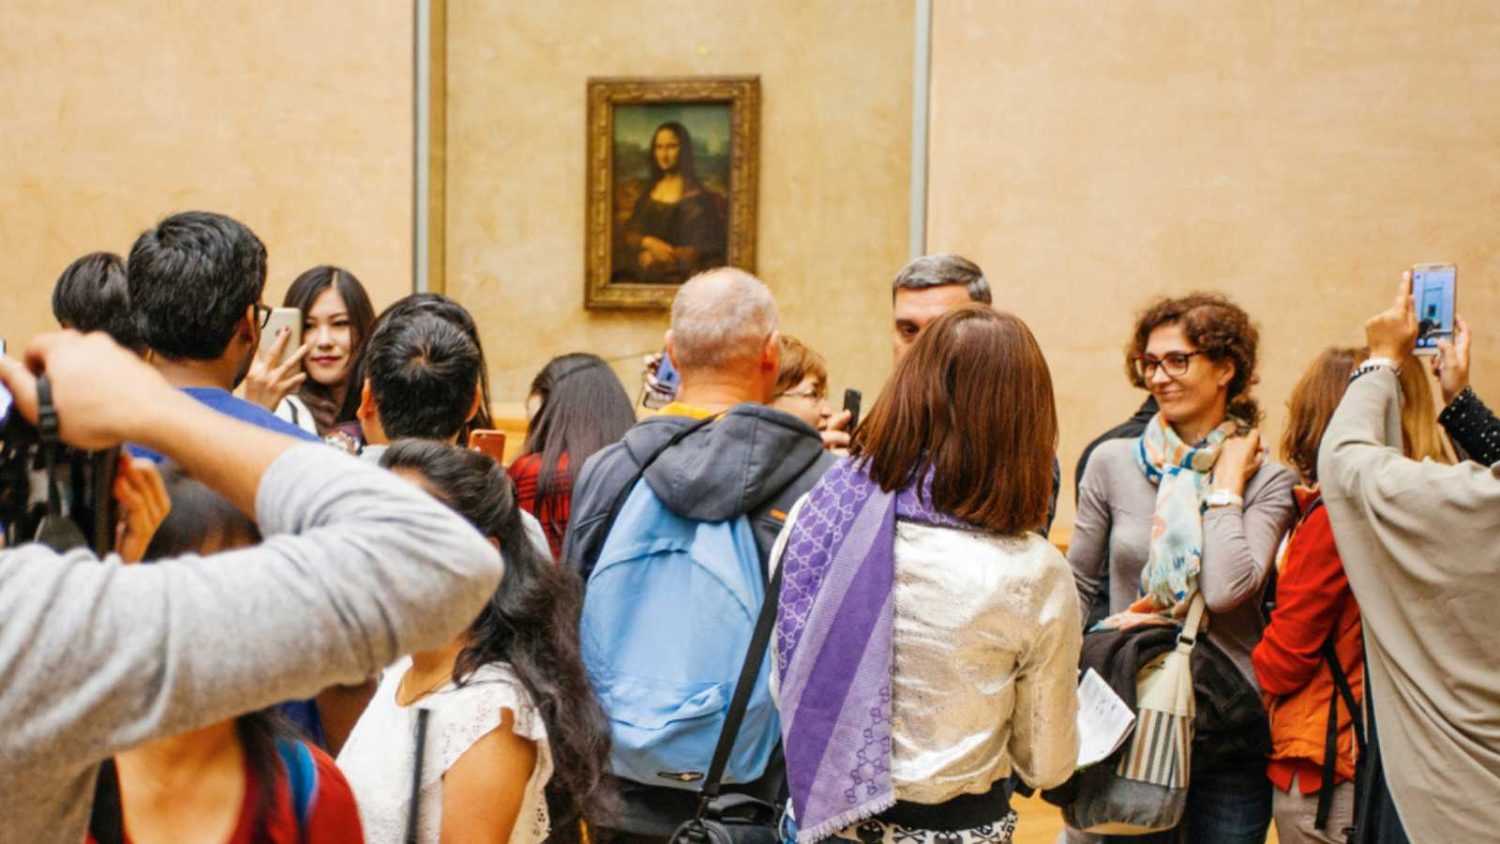 Mona Lisa, France